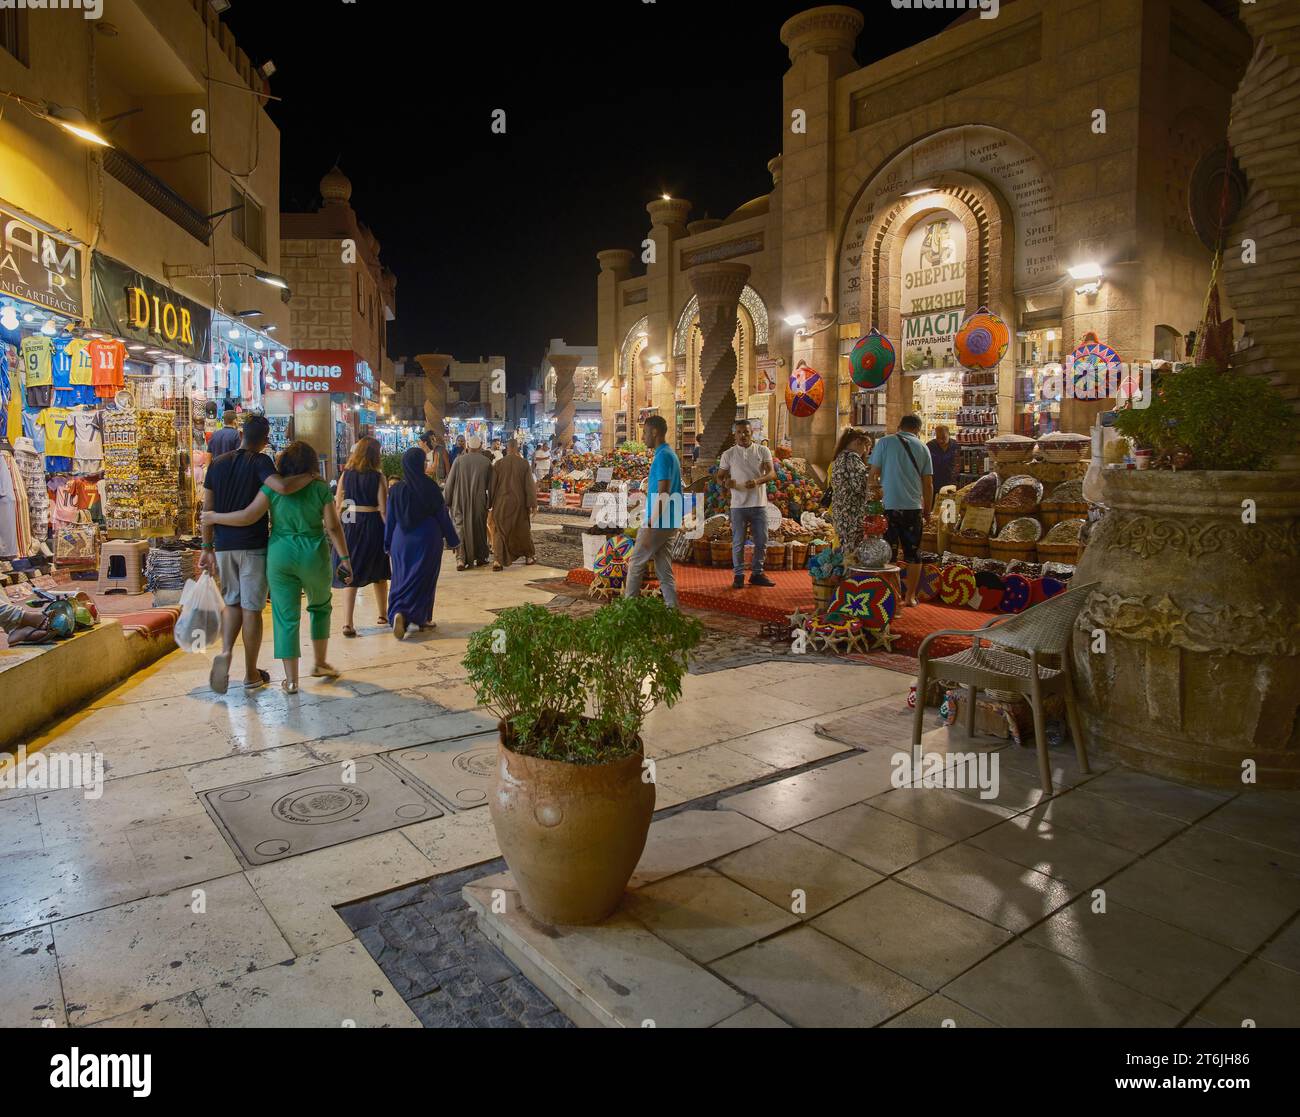 Il vecchio mercato di Sharm El Sheikh, in Egitto, è un mercato tradizionale risalente ai tempi antichi, con vista notturna. Foto Stock